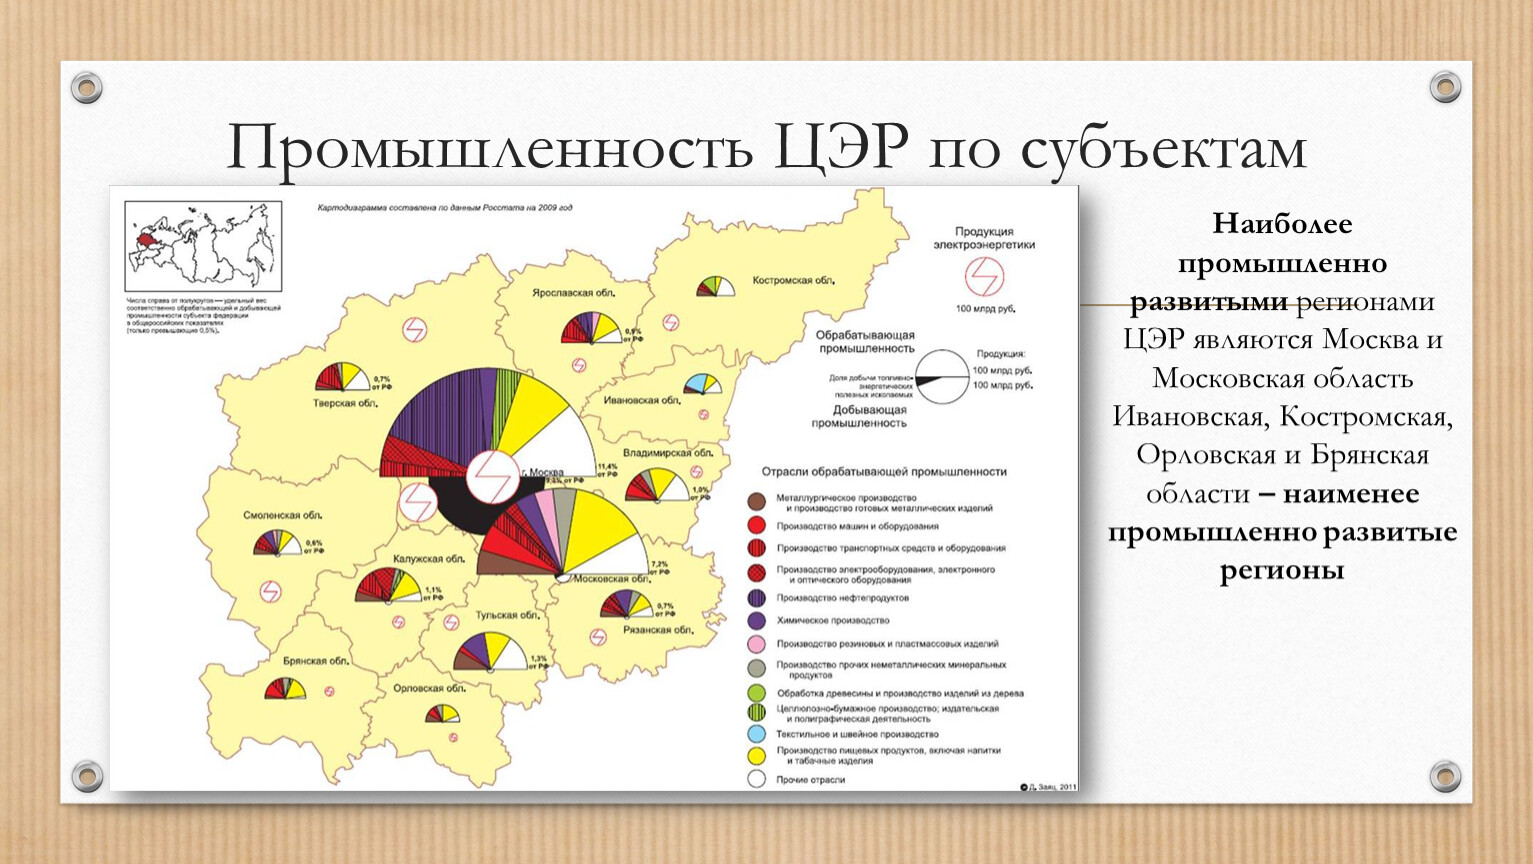 Культурно географические особенности центрального района - карта для туриста travelel.ru